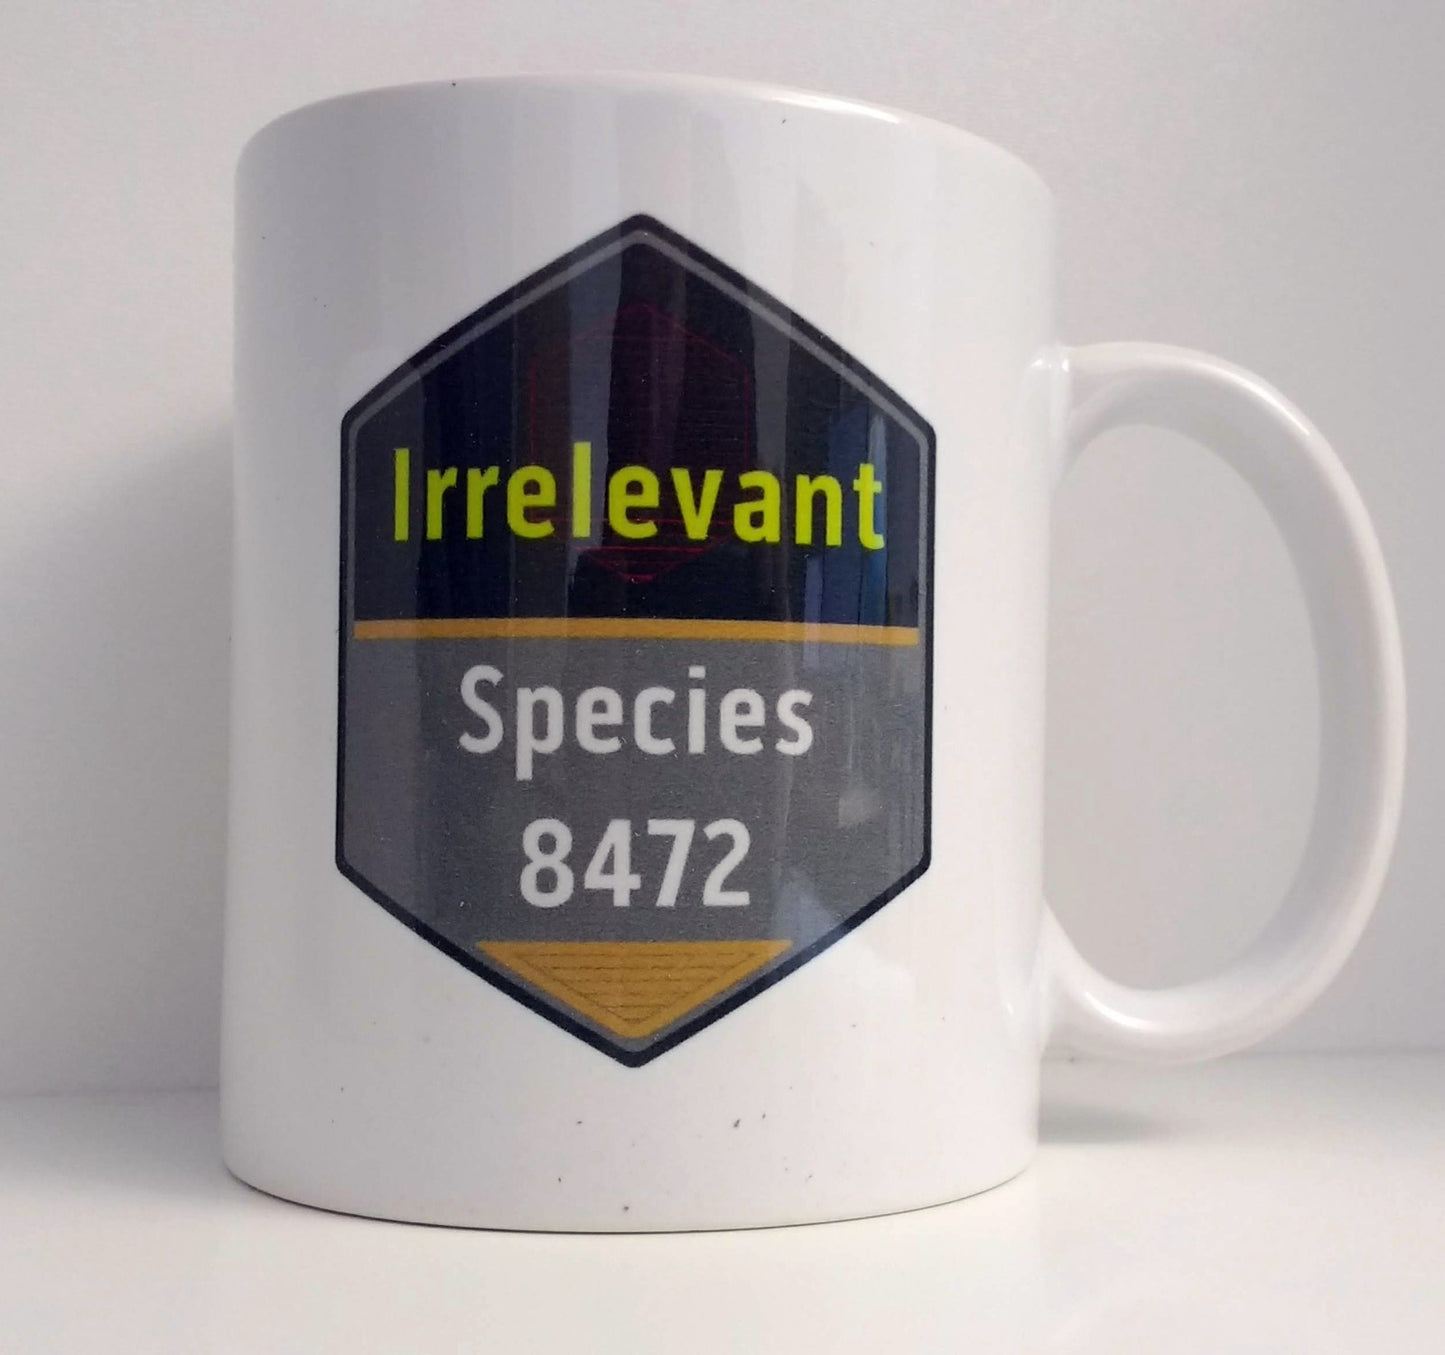 Spezies 8472 - Unwichtig - Irrelevant Tasse für Star Trek Fans - CVBNM SHOP